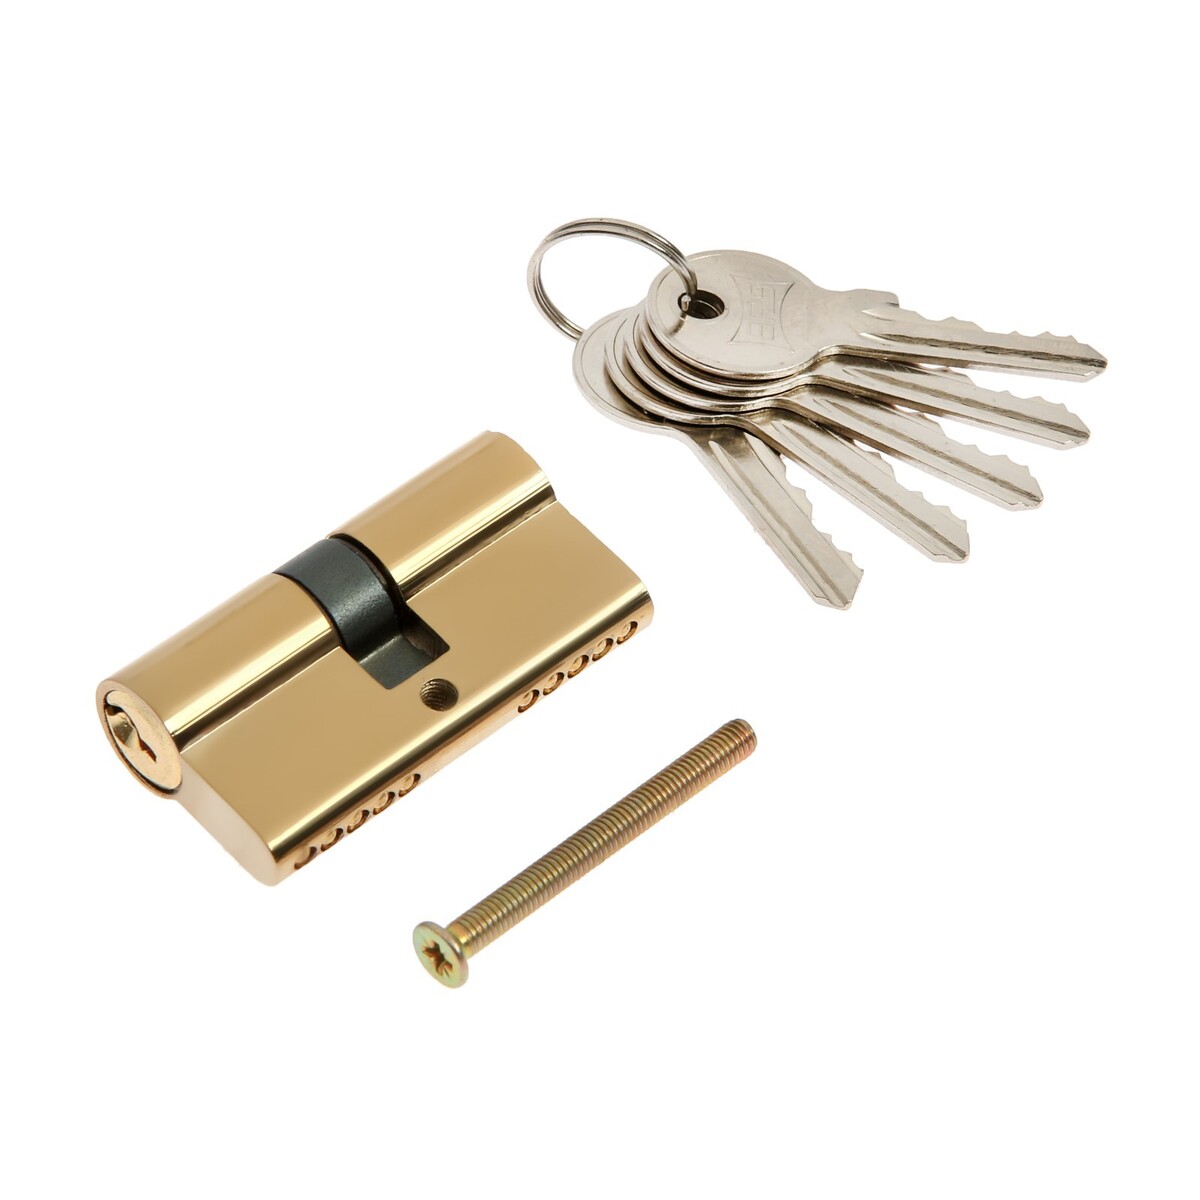 Цилиндровый механизм, 60 мм, английский ключ, 5 ключей, цвет золото замок врезной зенит зв4 3 01 00 00000452 ручка в комплекте цилиндровый медный